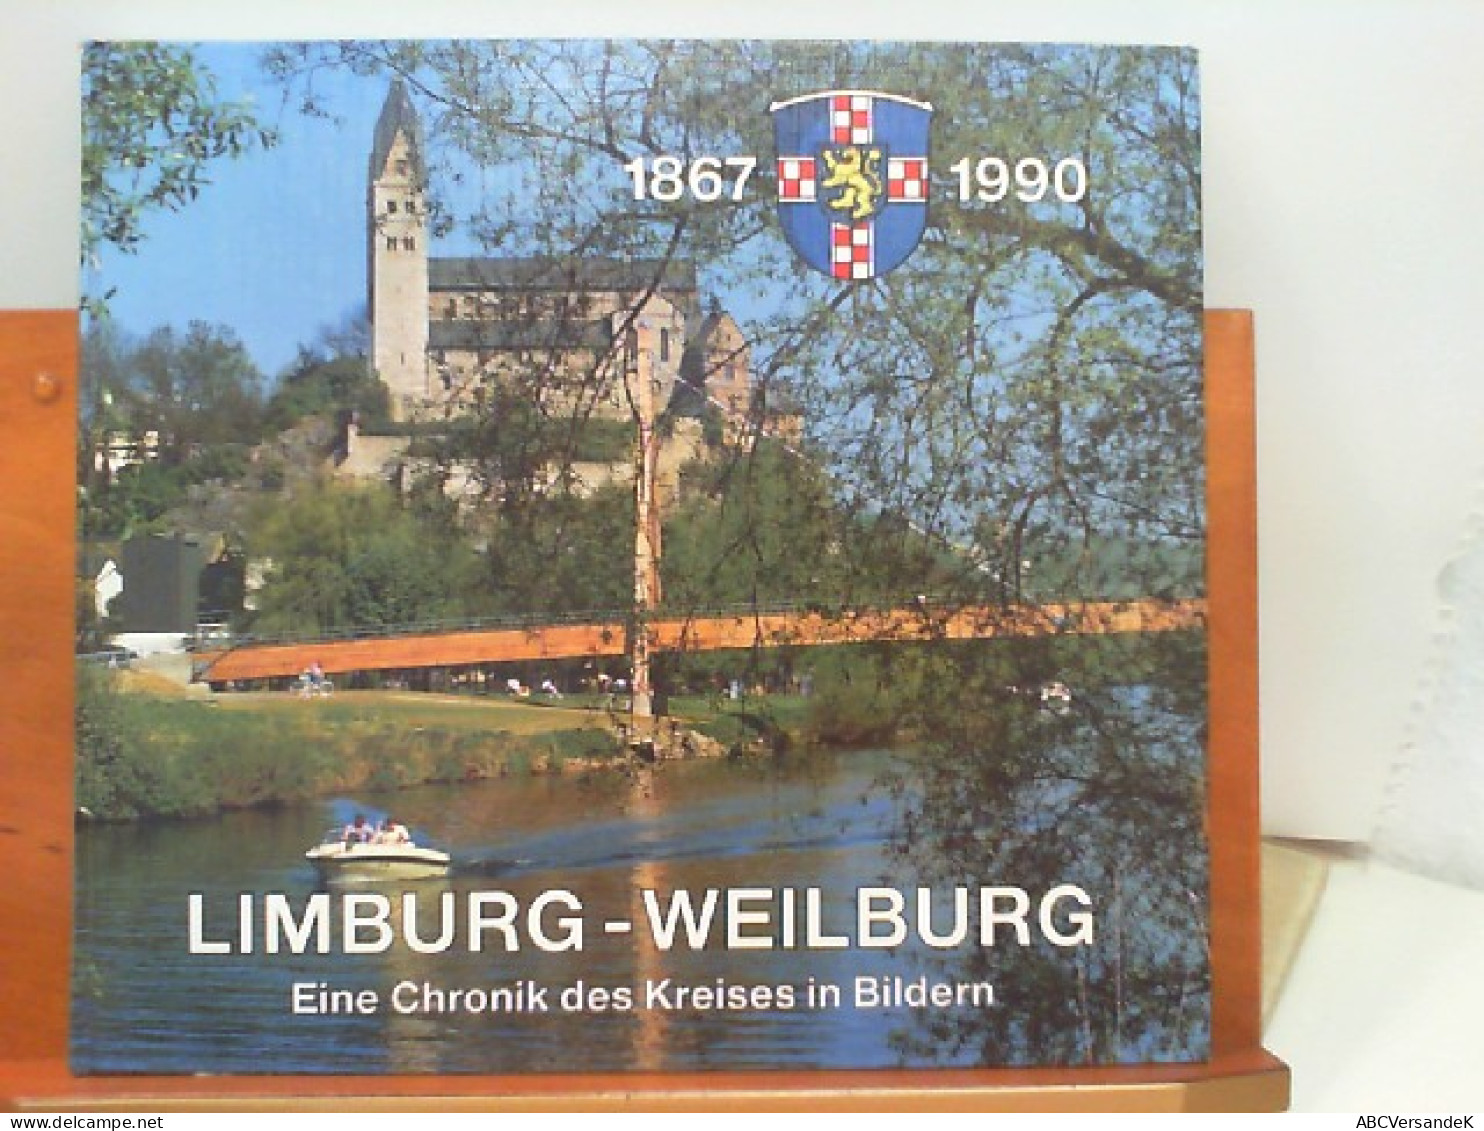 Limburg - Weilburg 1867 - 1990 - Eine Chronik Des Kreises In Bildern - Hesse